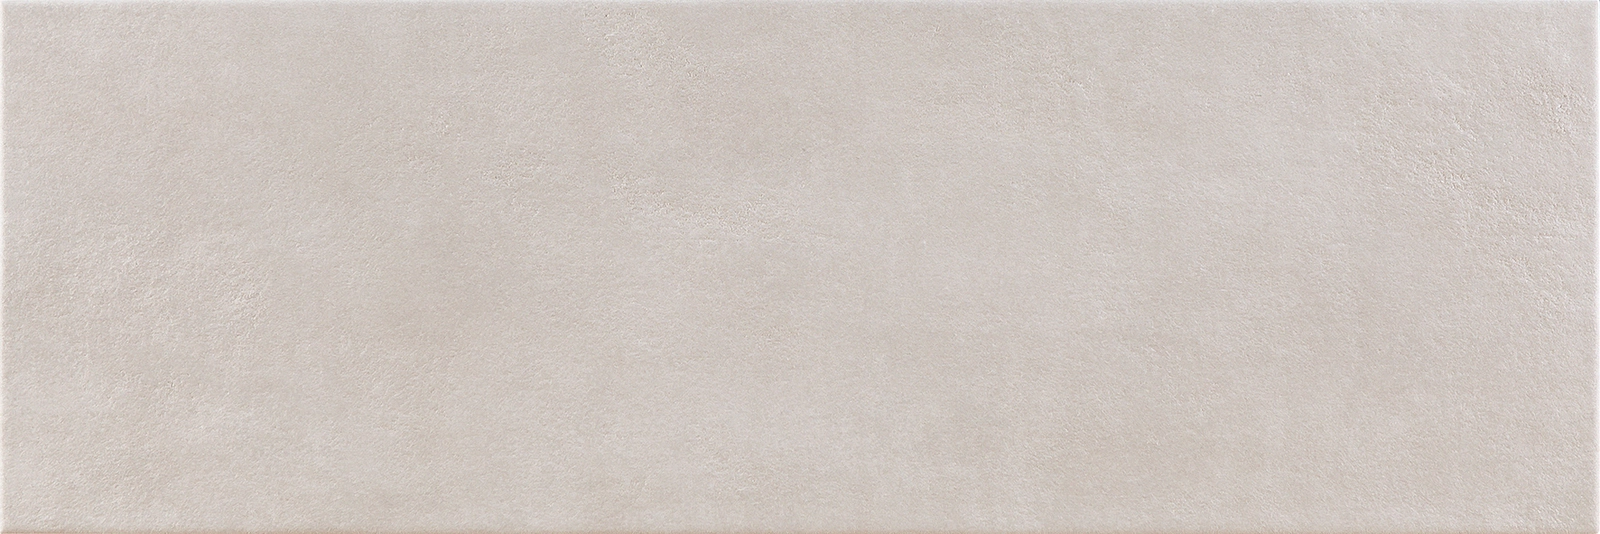 Obklad matný béžový Do-sso Sabbia rozmer 25x75 cm